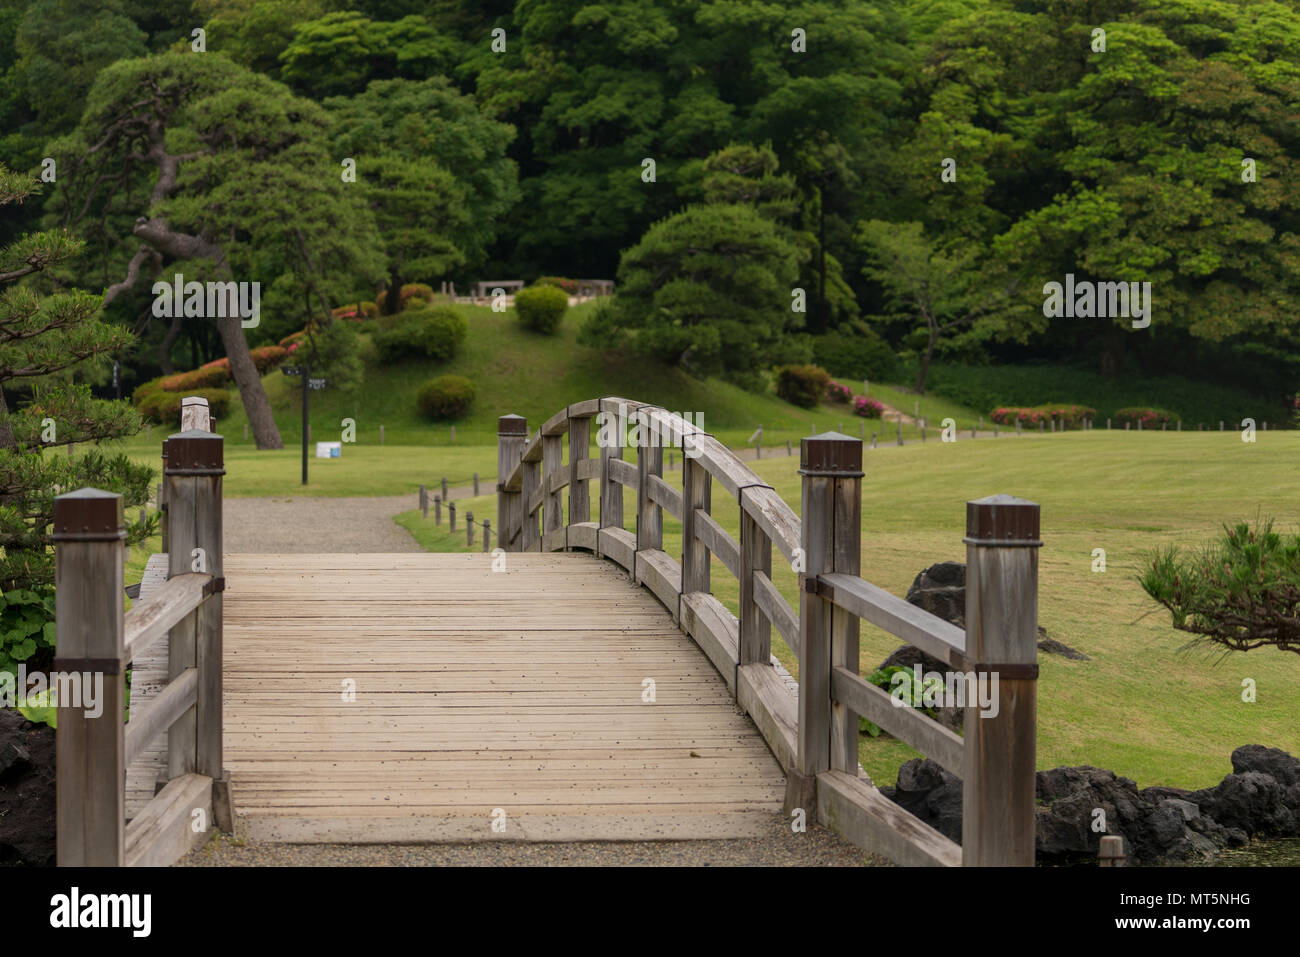 Hamarikyu Gärten in Tokio sind ein beliebter Ort für Touristen und Einheimische. Dieser Park hat Teichen, Brücken und ein japanisches Teehaus in ihrer Begründung. Stockfoto